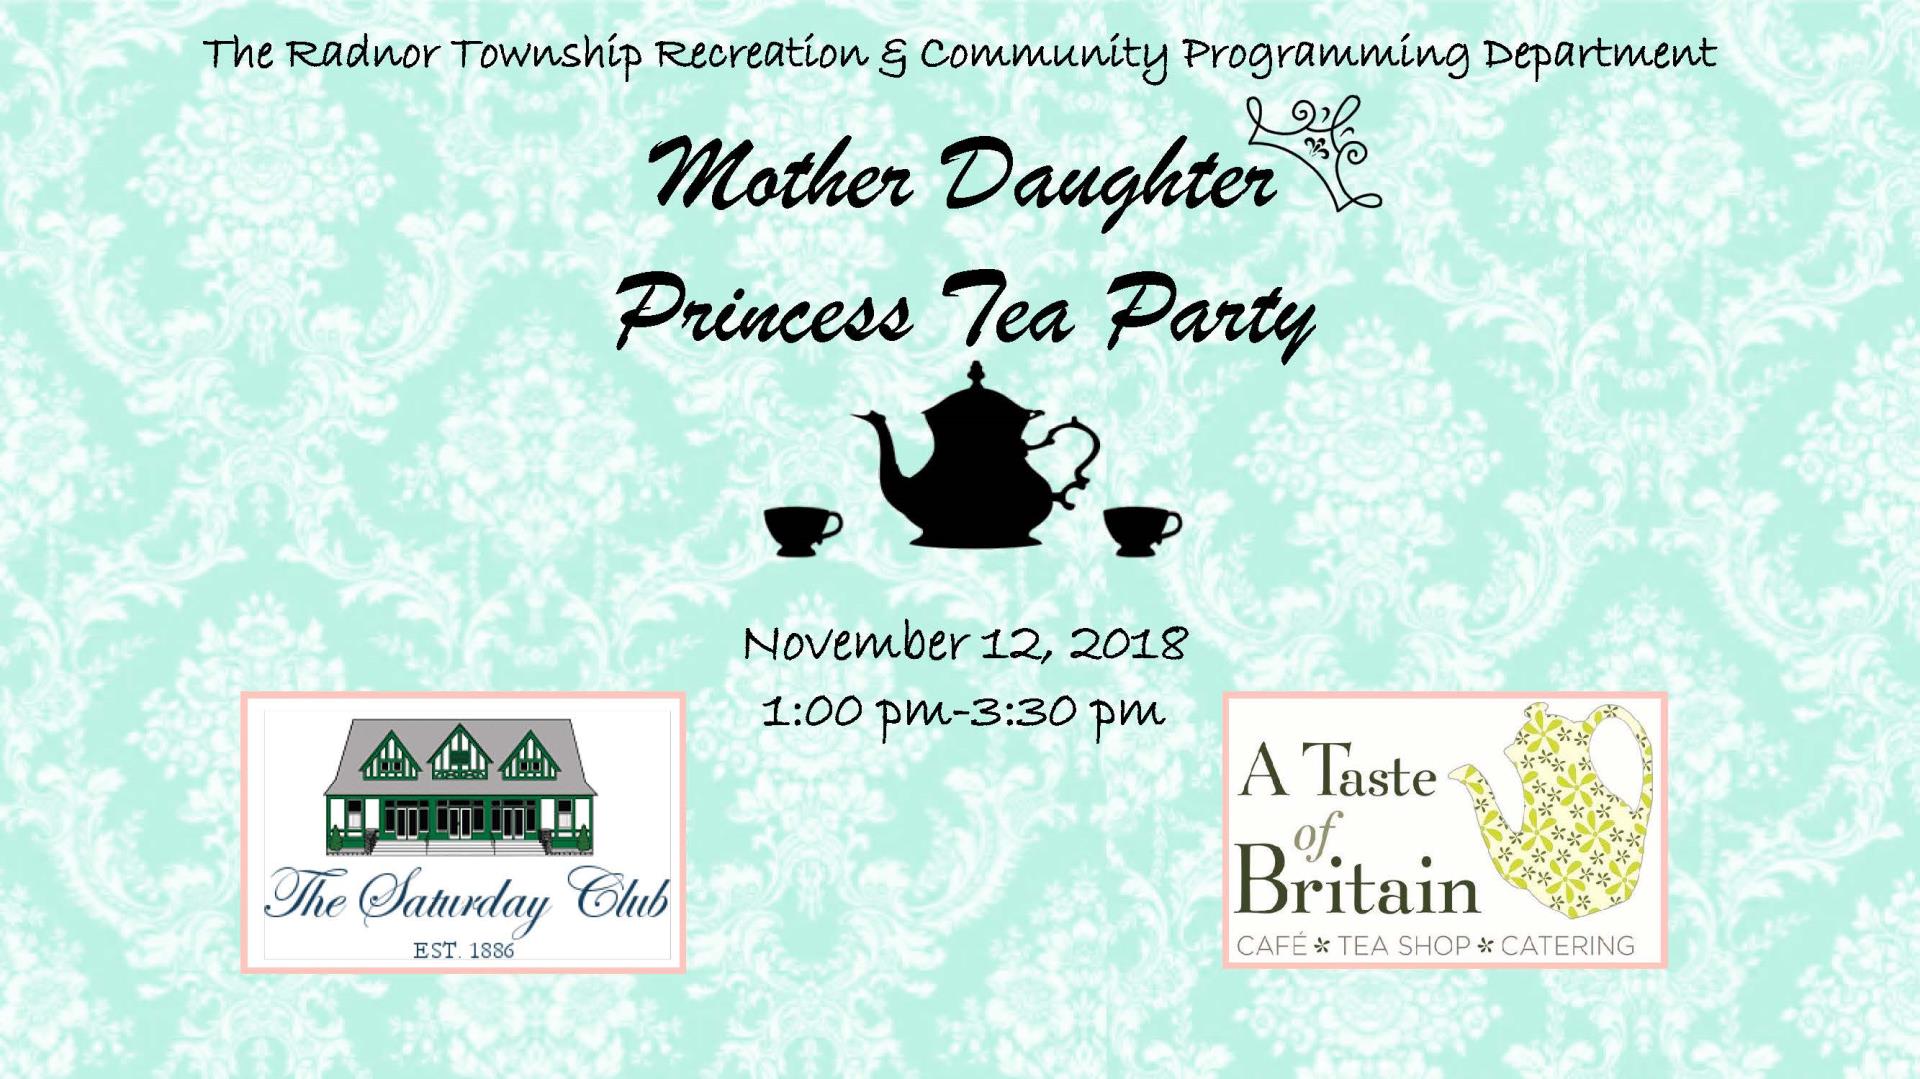 2018 Mother Daughter Princess Tea Party